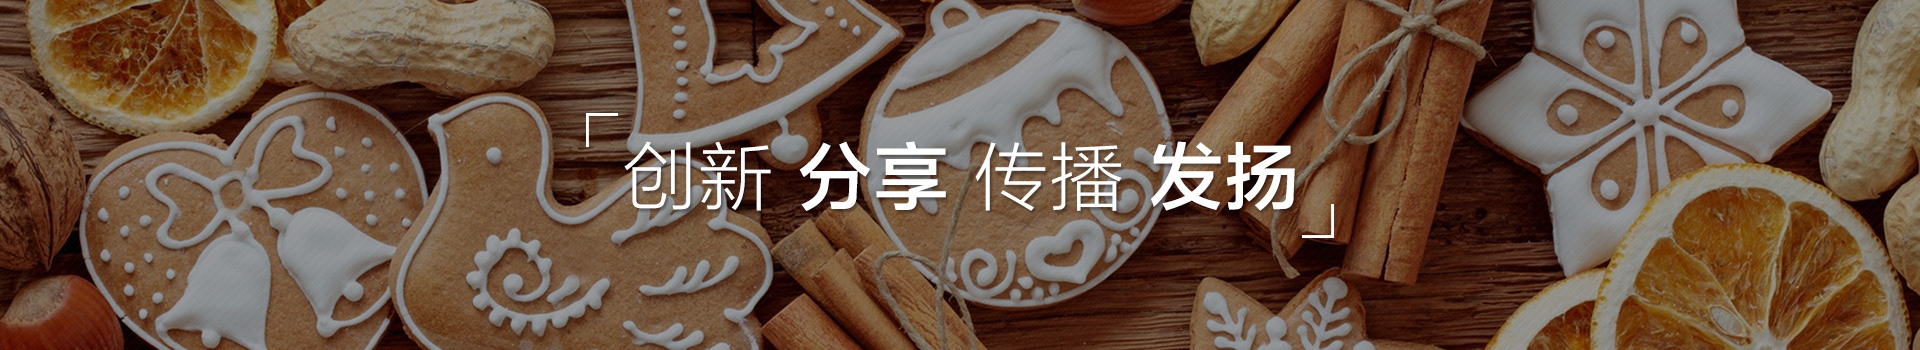 上海汉珏精密机械有限公司,多功能包馅机,酥饼机,包子馒头生产线,蛋糕机,曲奇机